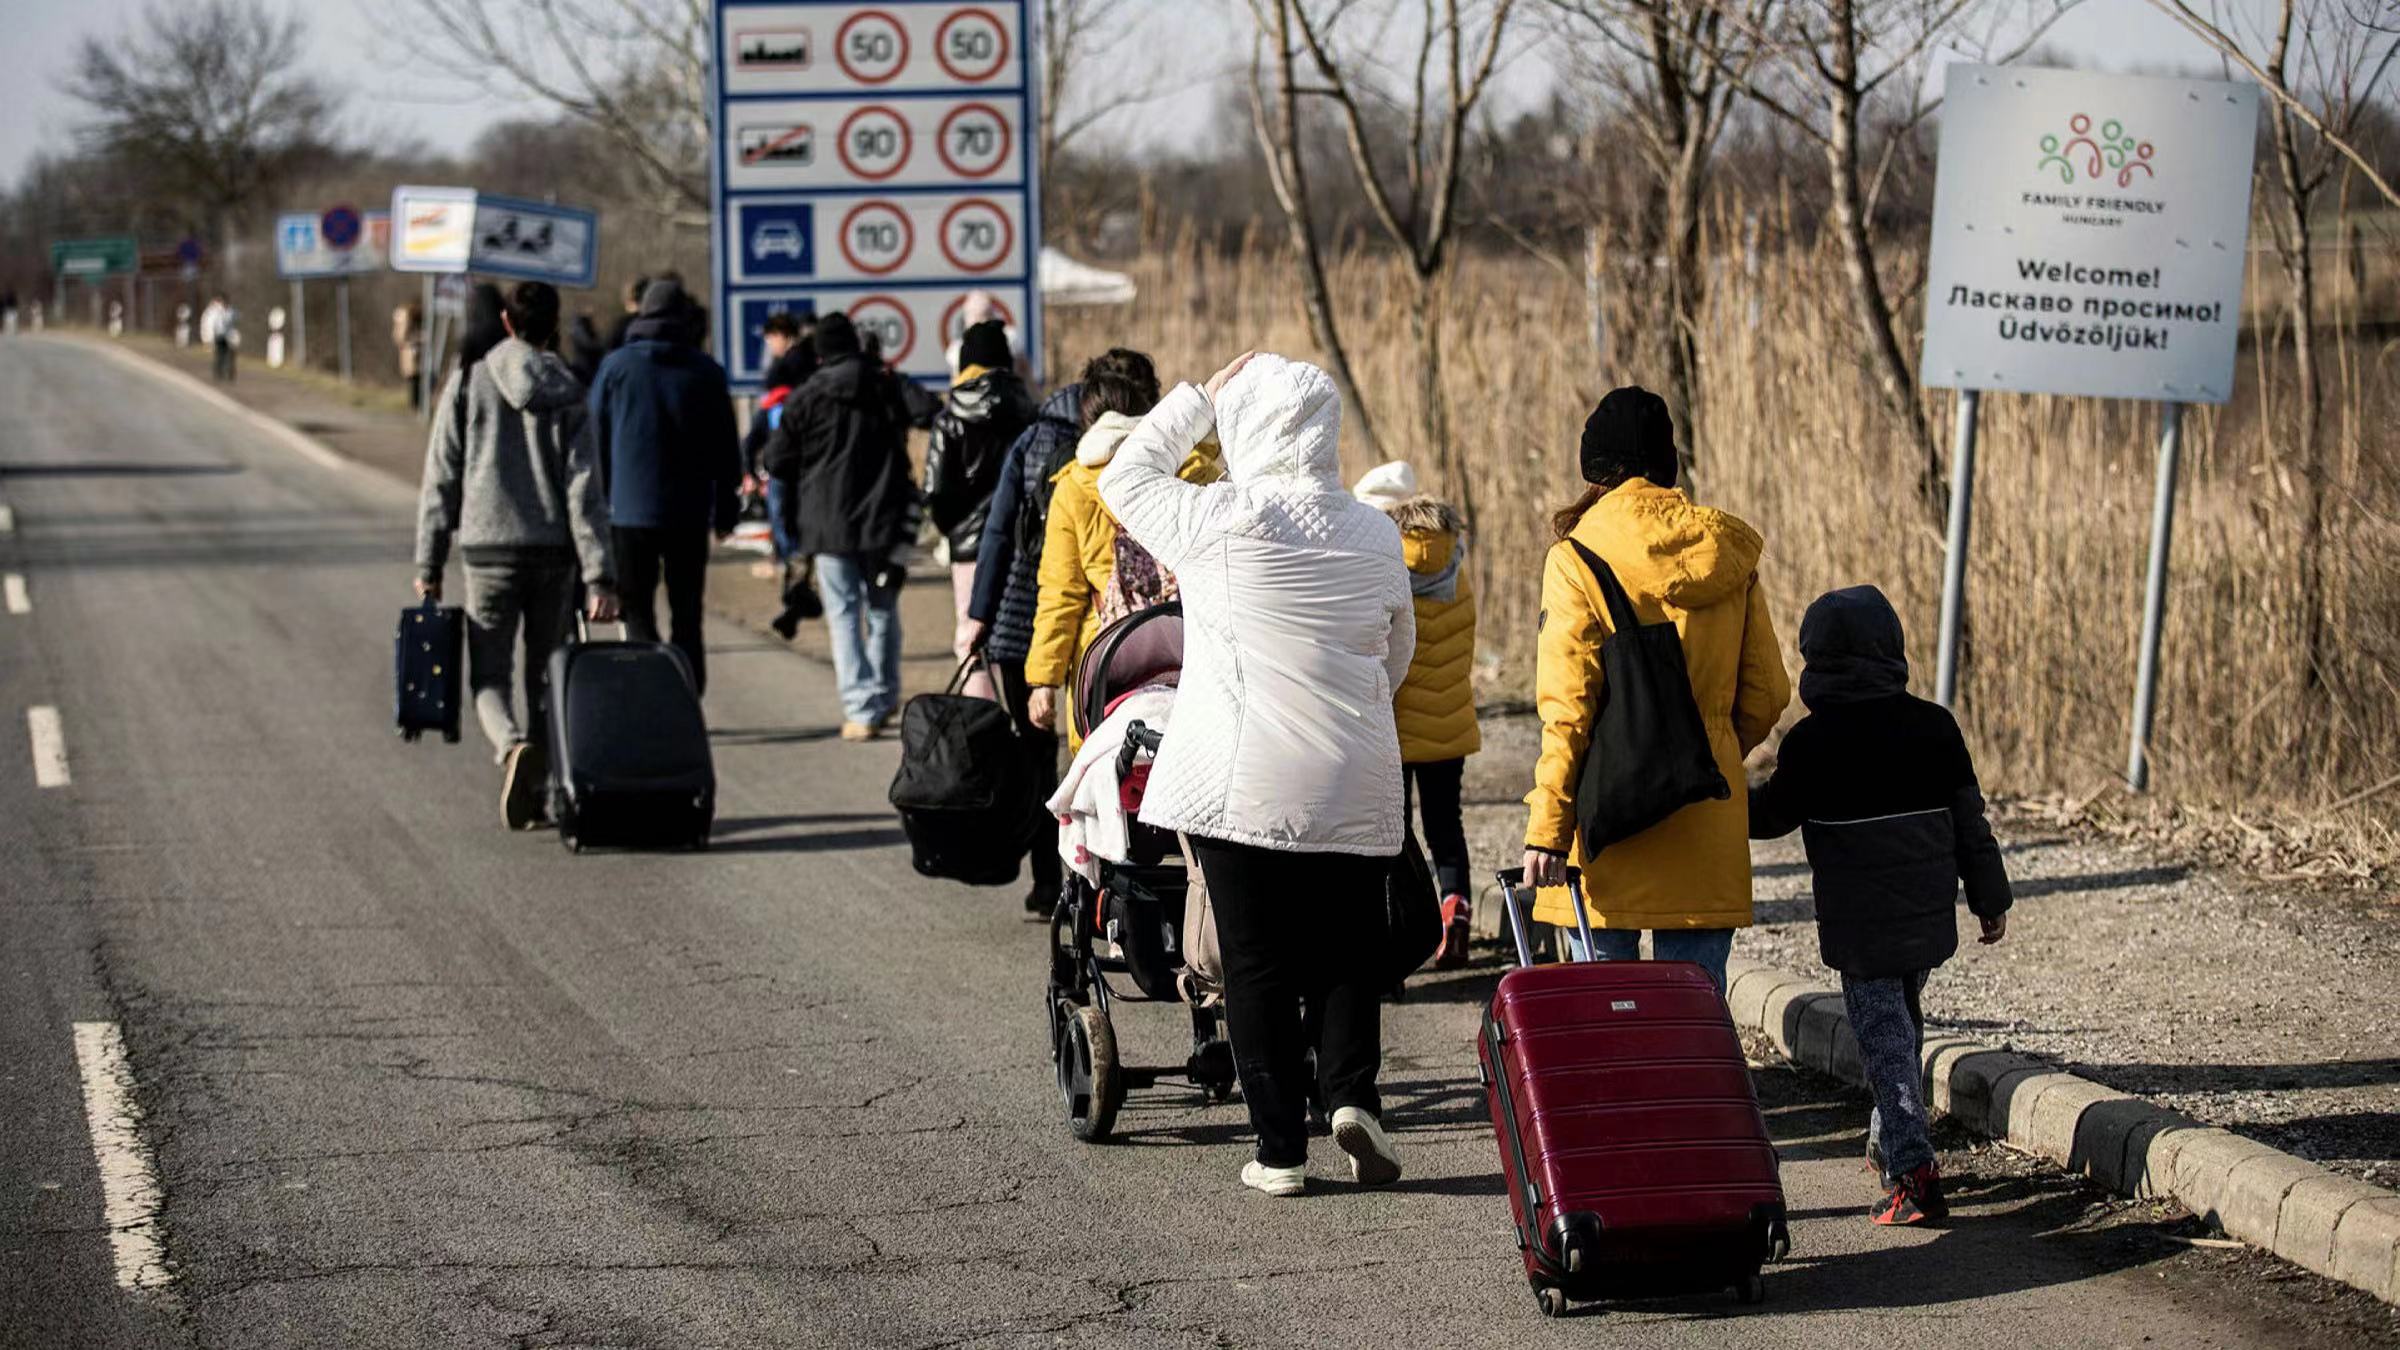 烏克蘭人湧往羅馬尼亞避難 衞星圖現6.4公里車龍